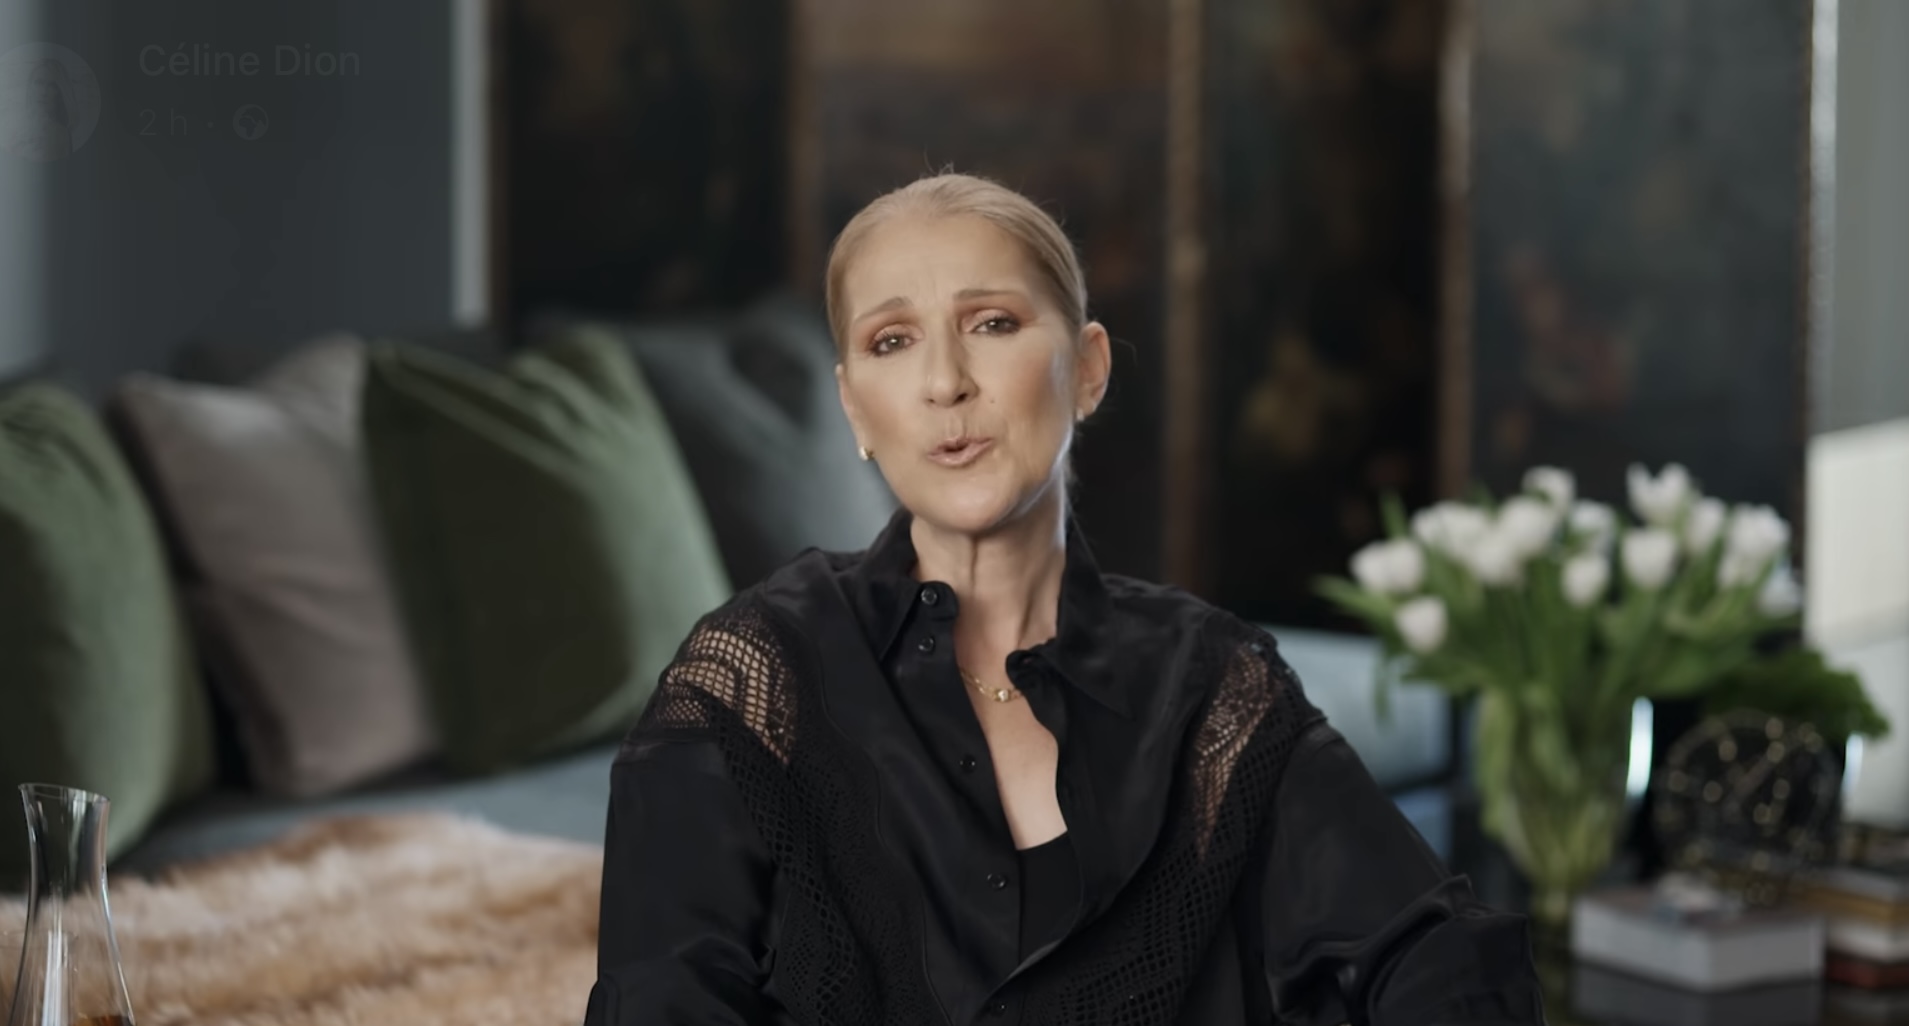 Céline Dion à nouveau en deuil : la chanteuse partage un message bouleversant